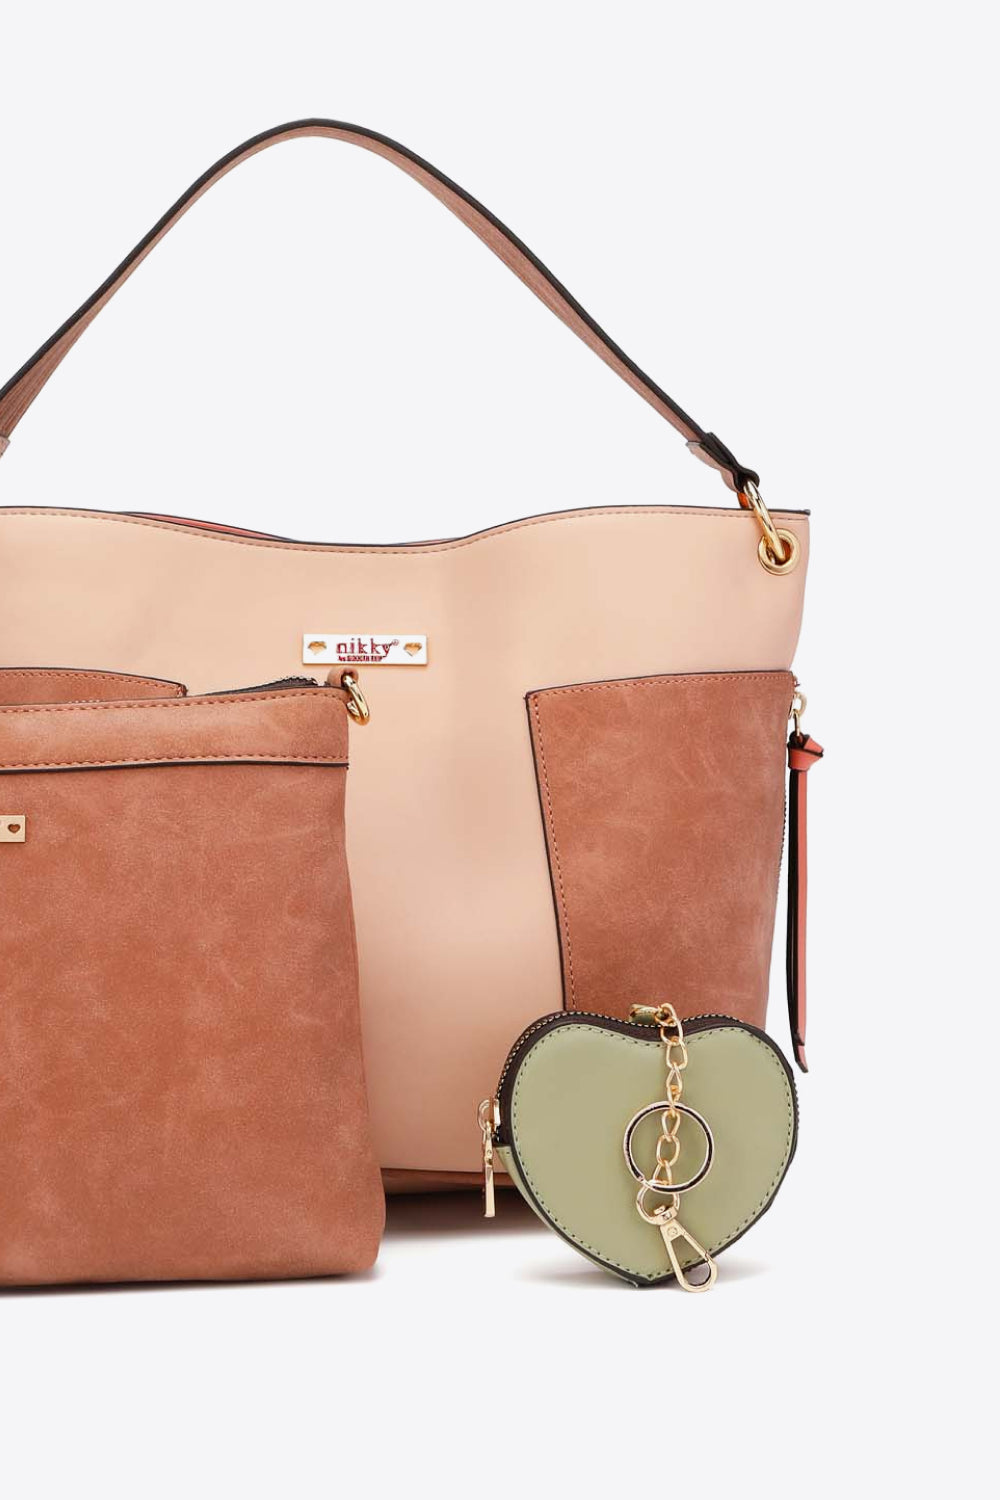 Nicole Lee USA Sweetheart Handbag Set - Online Only